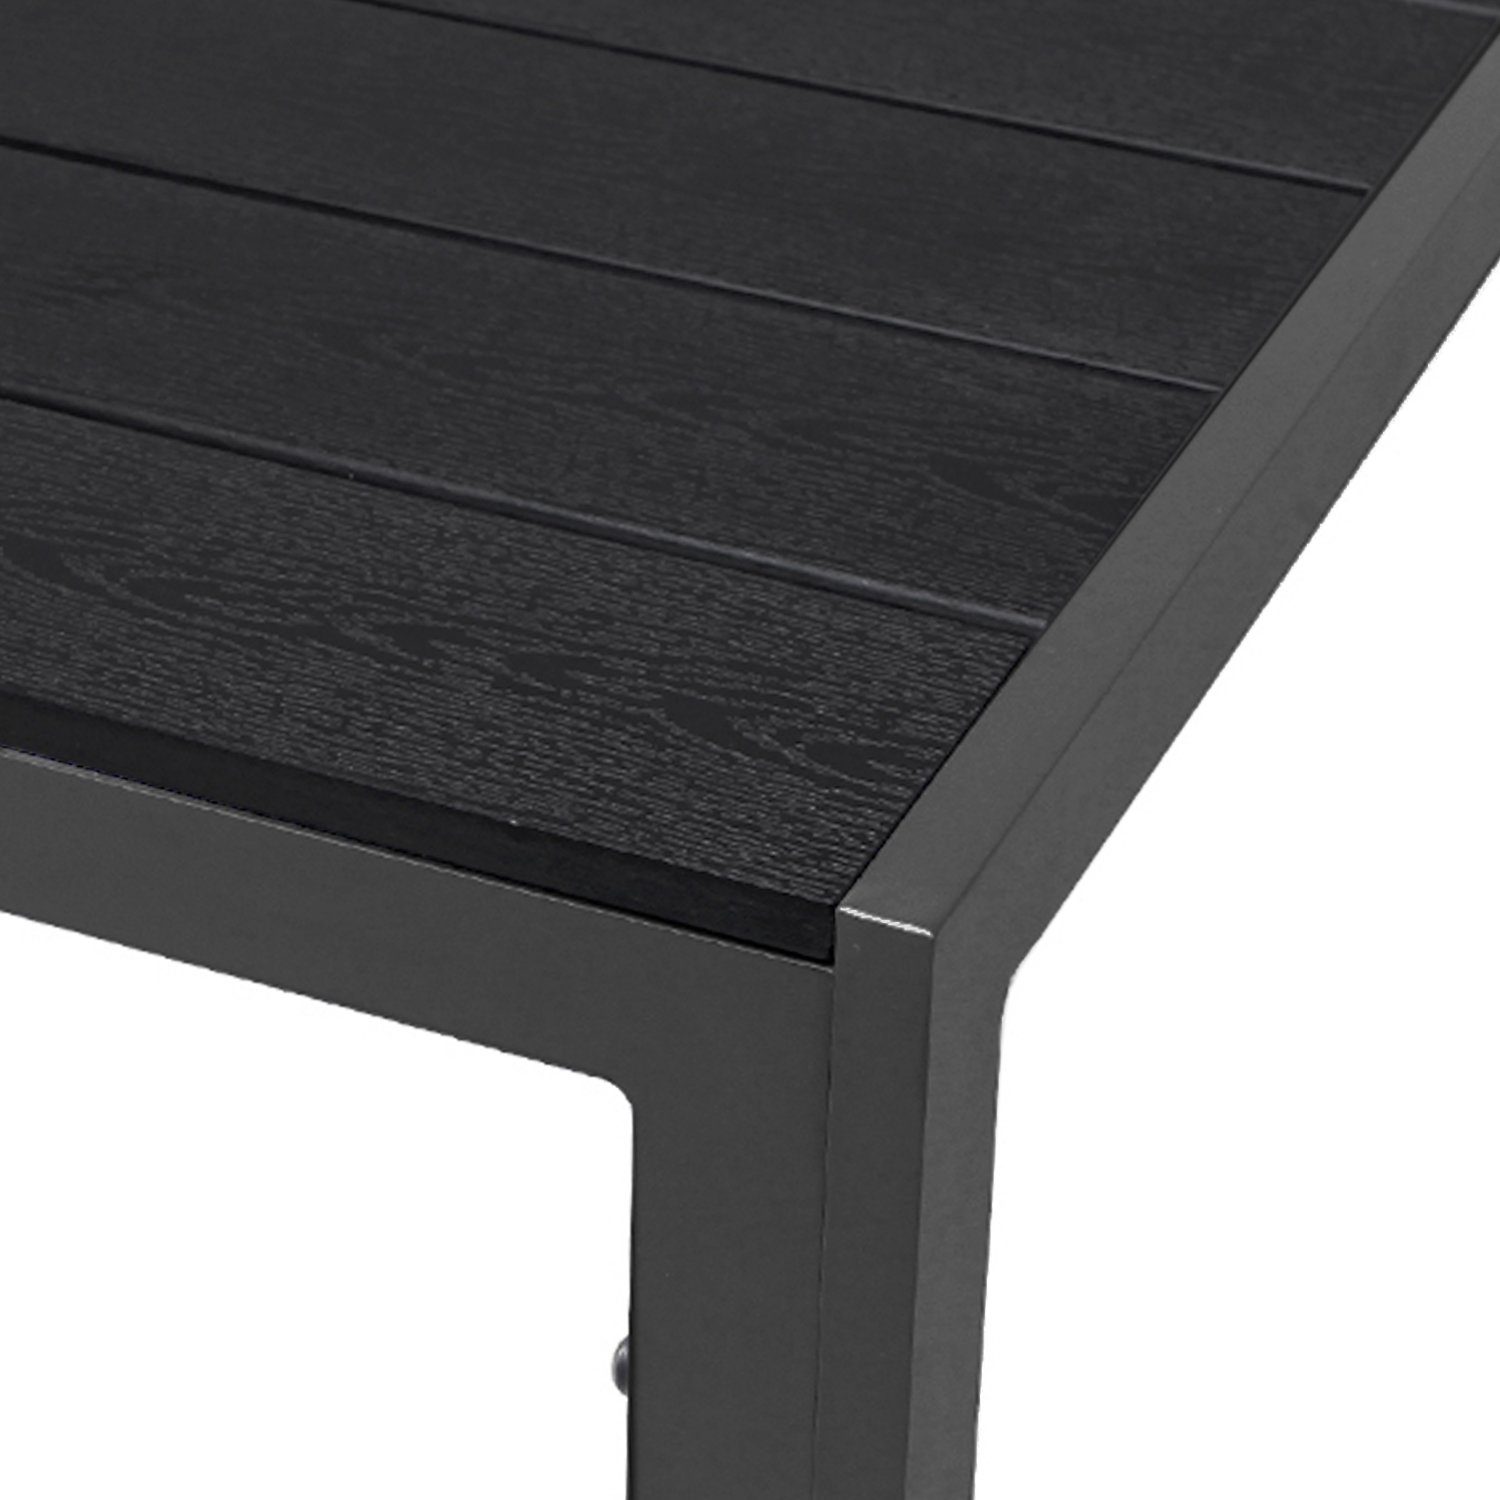 125x70cm Gartentisch Esstisch Non-Wood Mojawo / Aluminium schwarz Küchentisch anthrazit